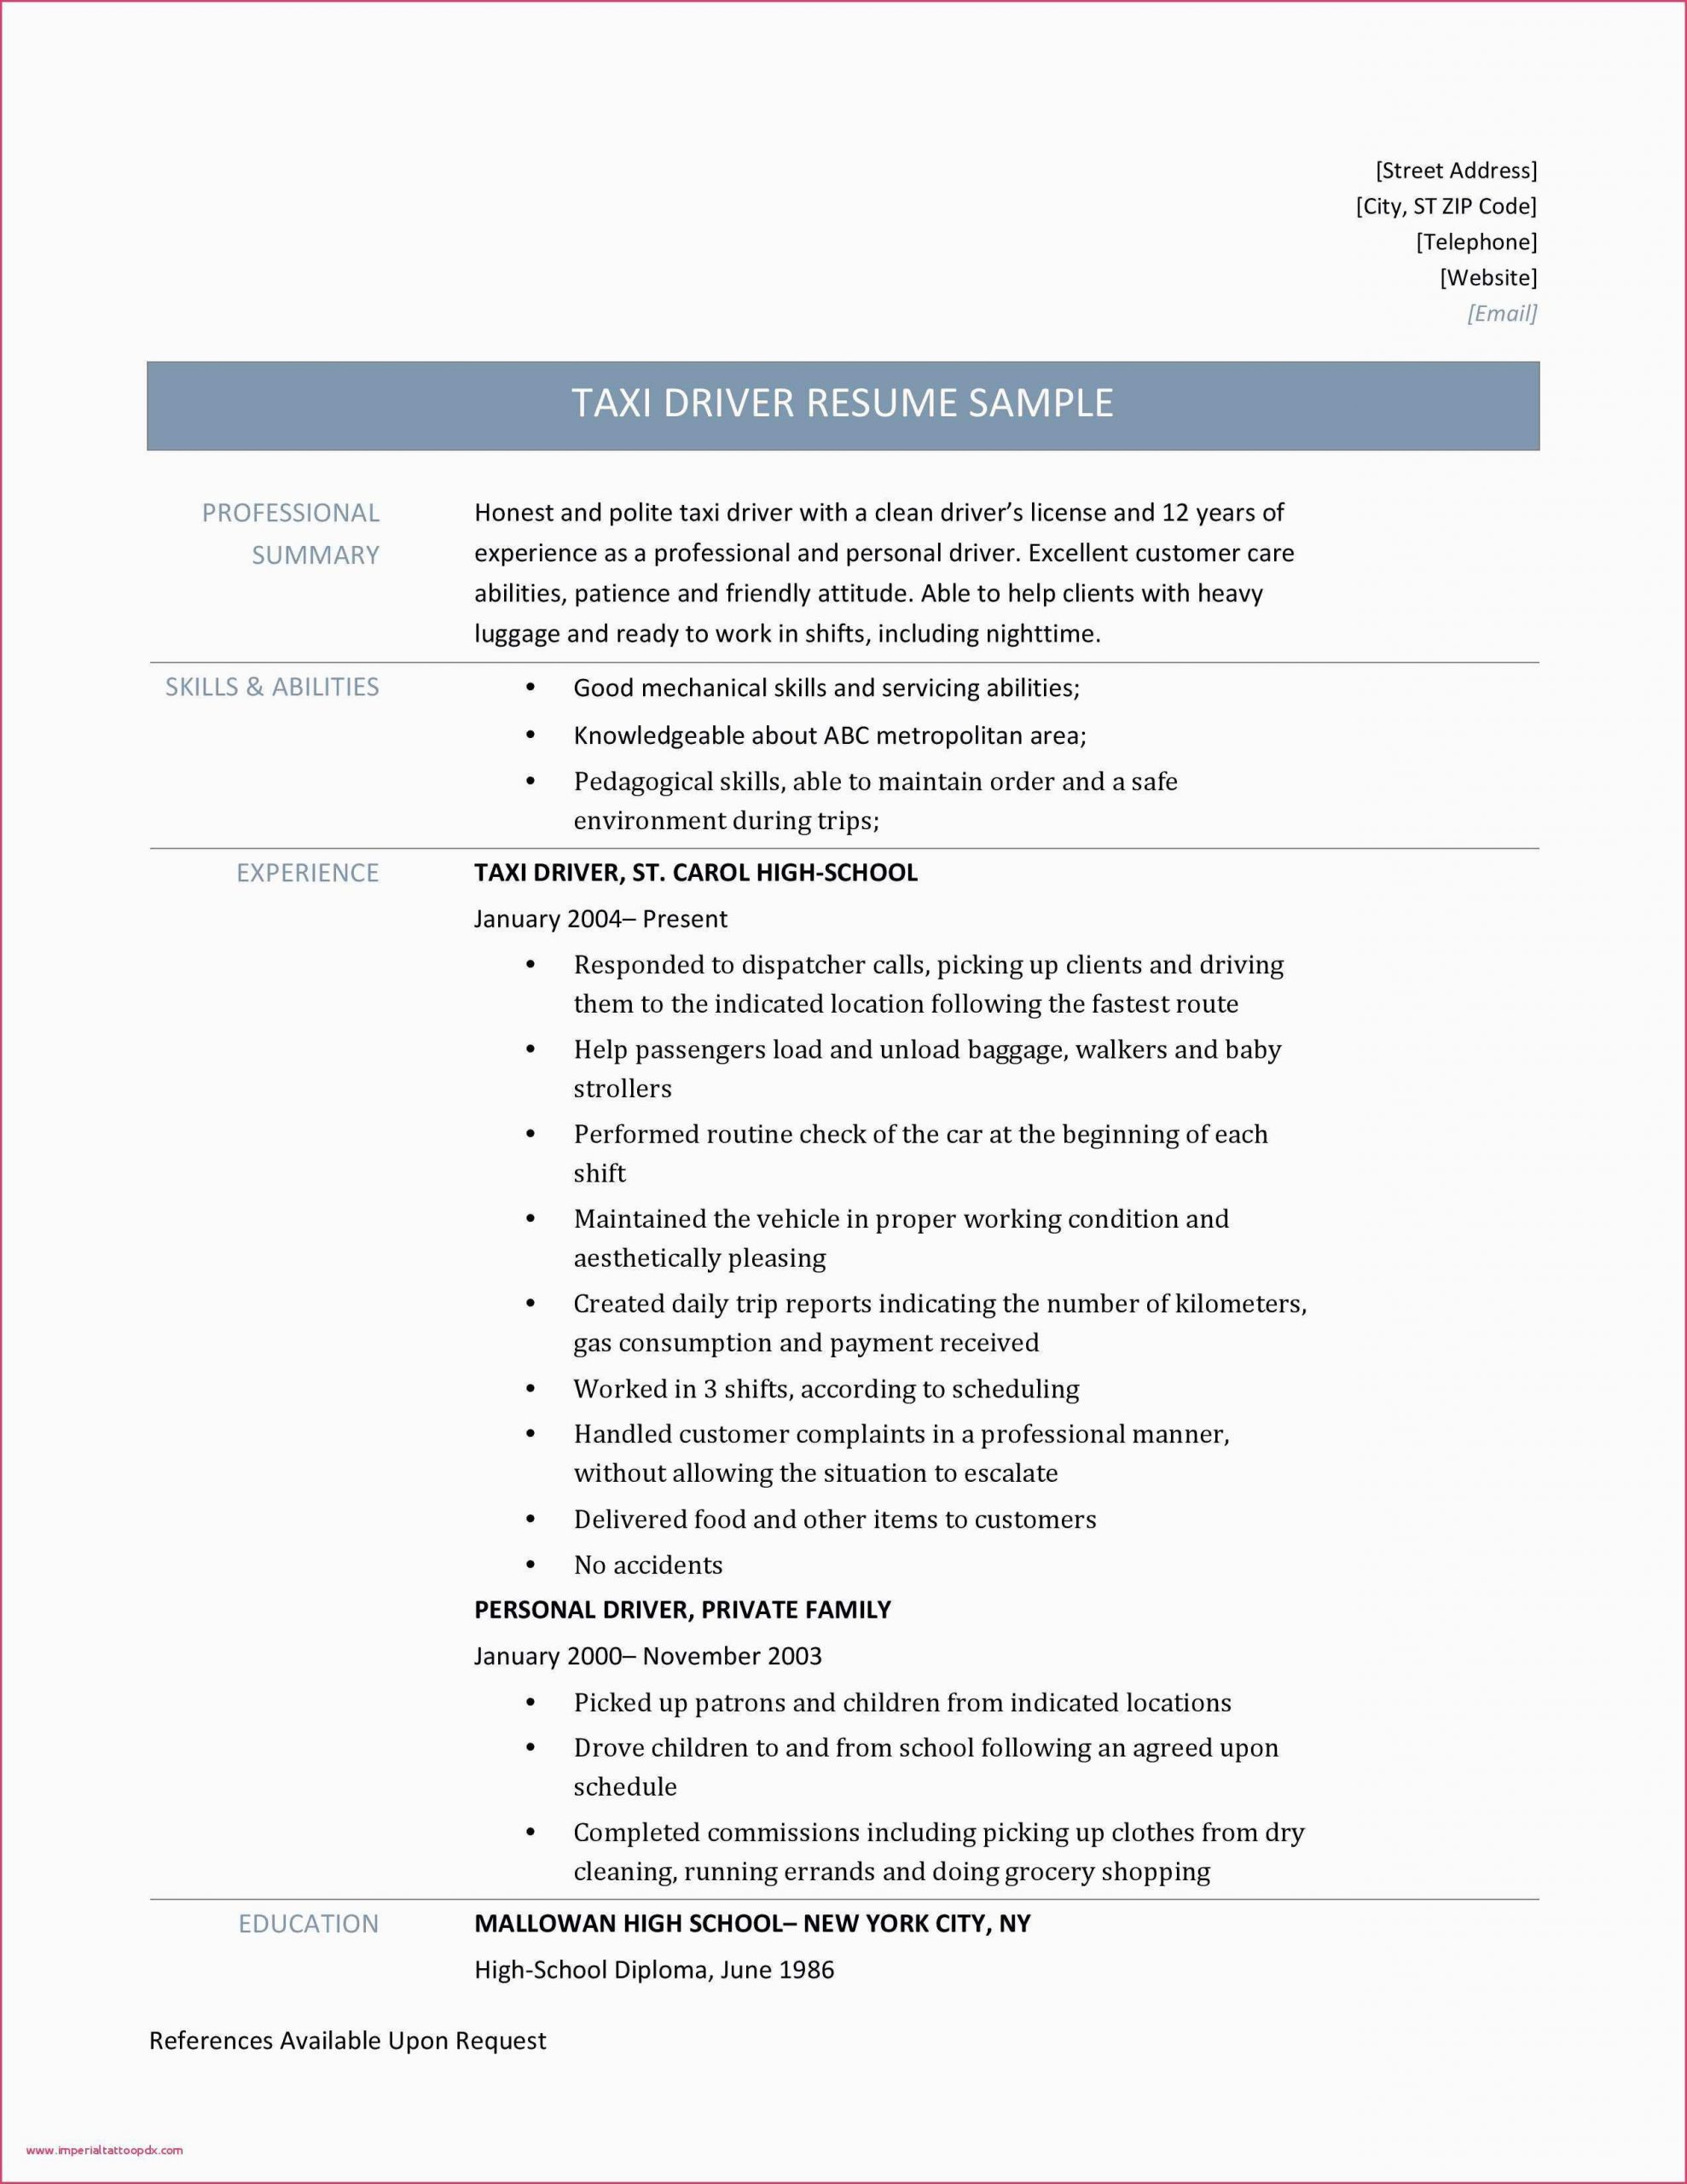 Sample Resume Newspaper Delivery Job Description Resume for Agriculture Jobs – Cerel